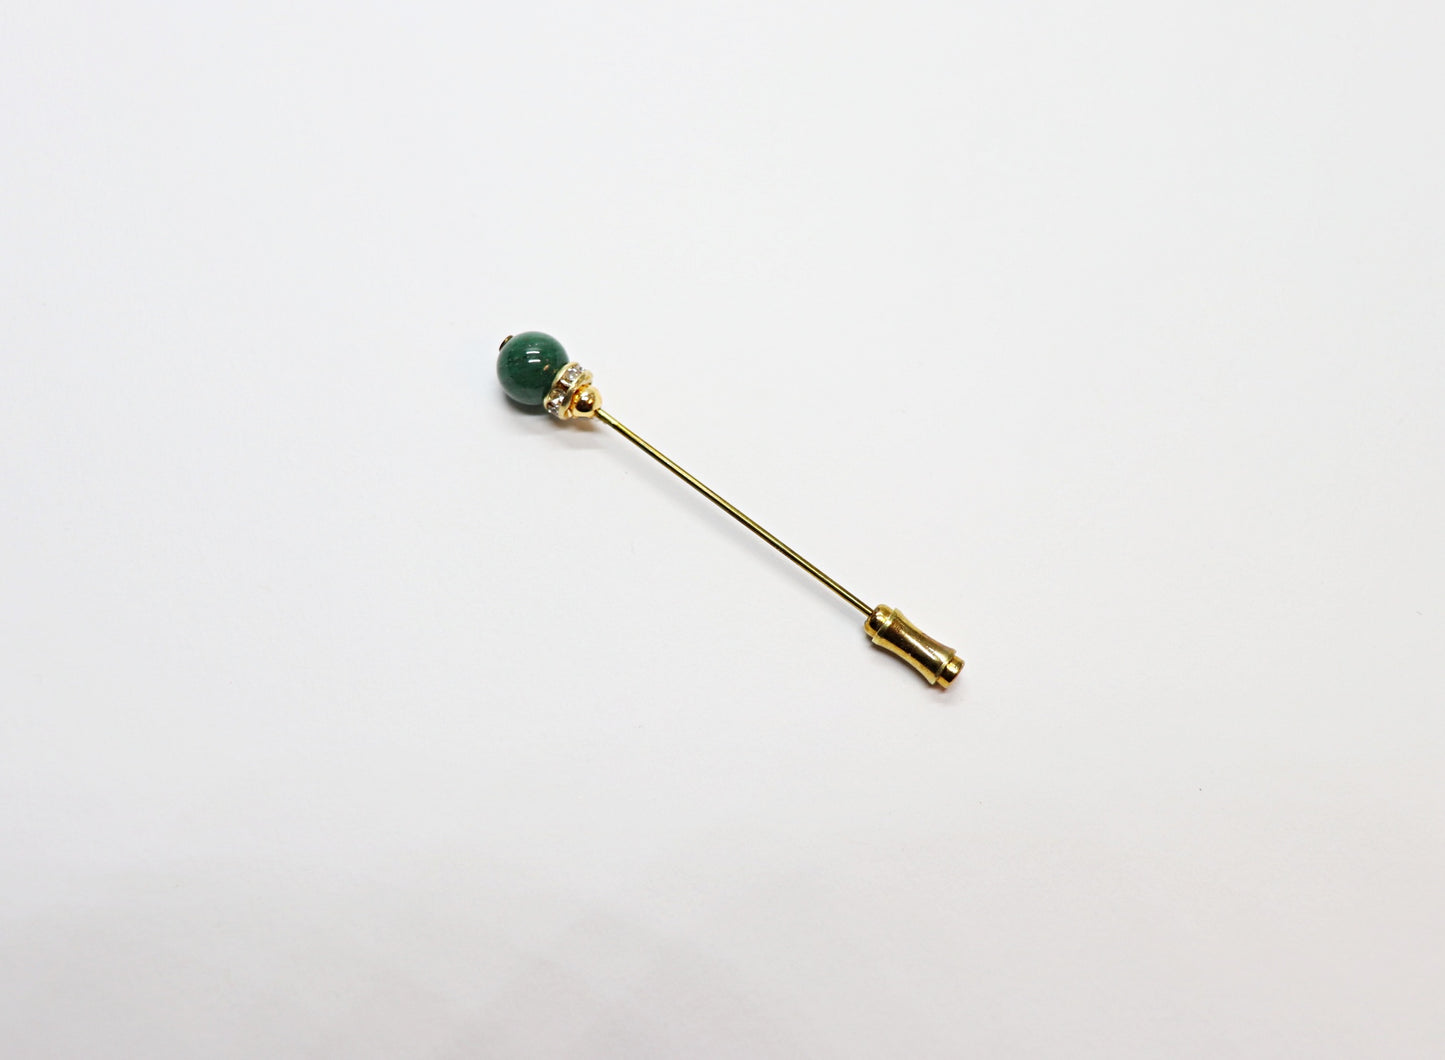 Hat pin with semi-precious stone